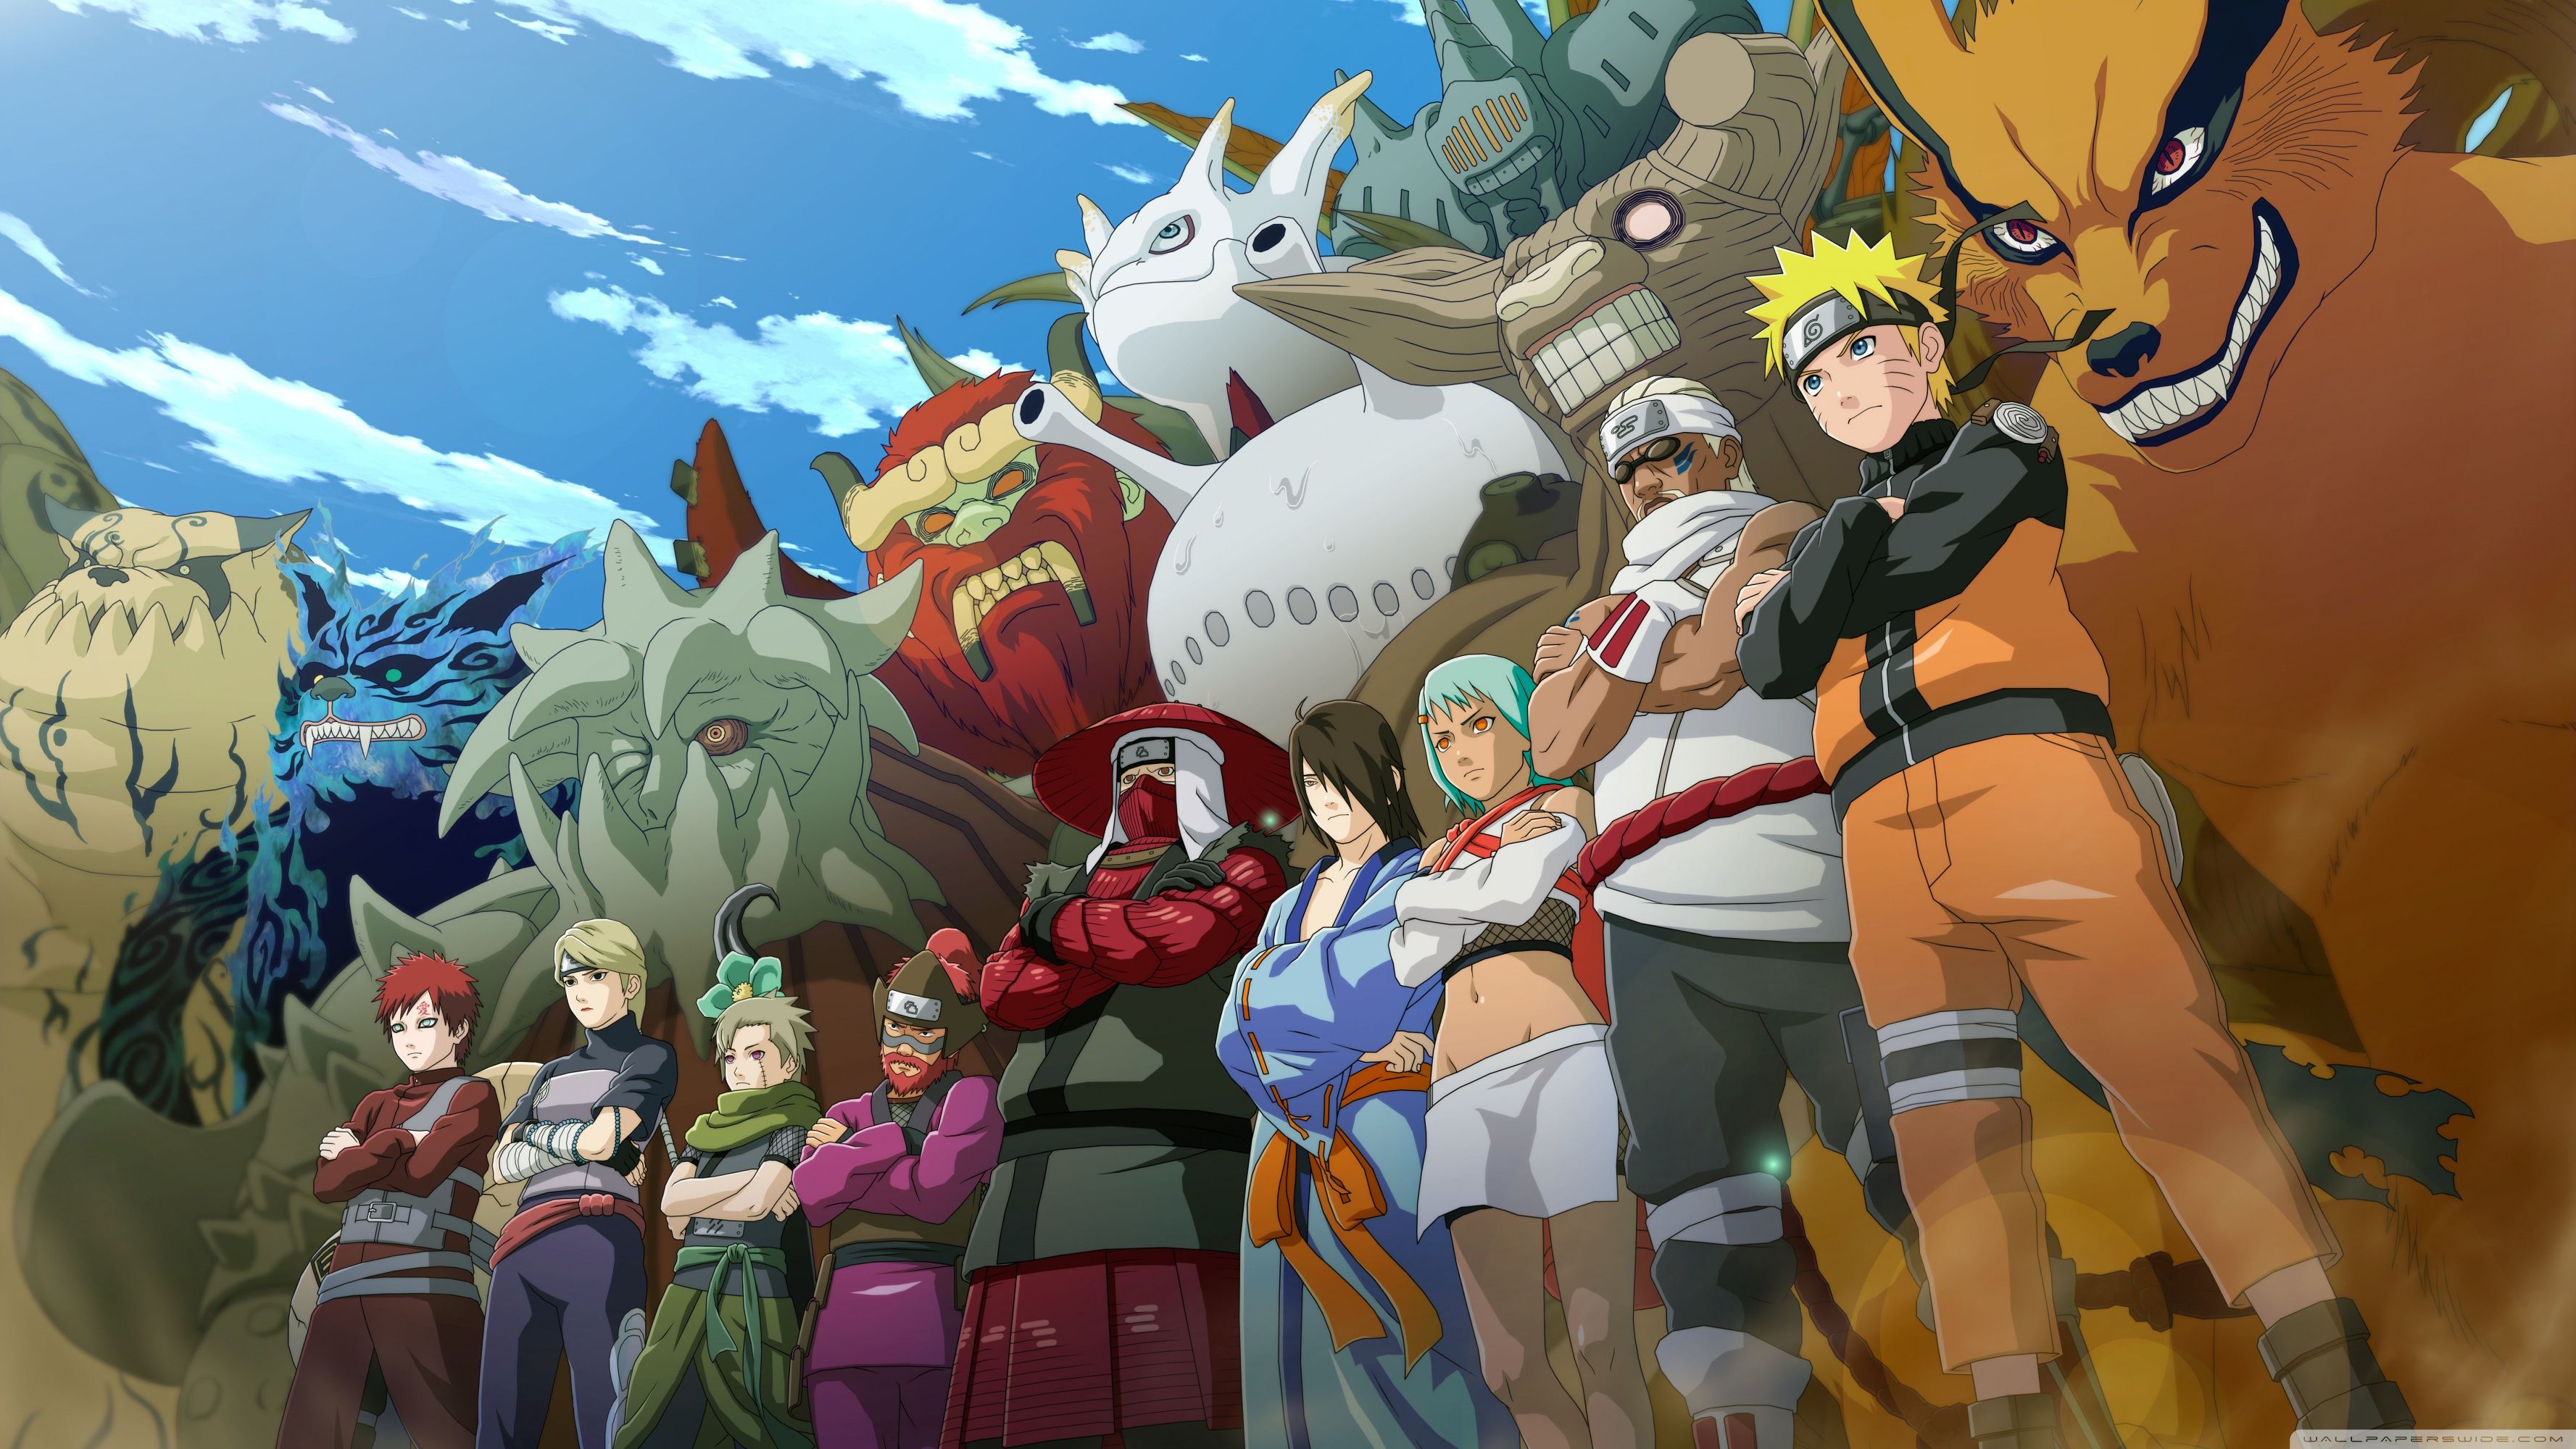 Có thể bạn đã xem tất cả những hình nền Naruto trên mạng, nhưng chắc chắn bạn chưa thấy bức tranh này! Với chất lượng cao và độc đáo, bức tranh Naruto cung cấp một cái nhìn mới lạ đến nhân vật yêu thích của bạn. Tìm kiếm bức tranh của bạn ngay bây giờ và khám phá người anh hùng tuyệt vời này!